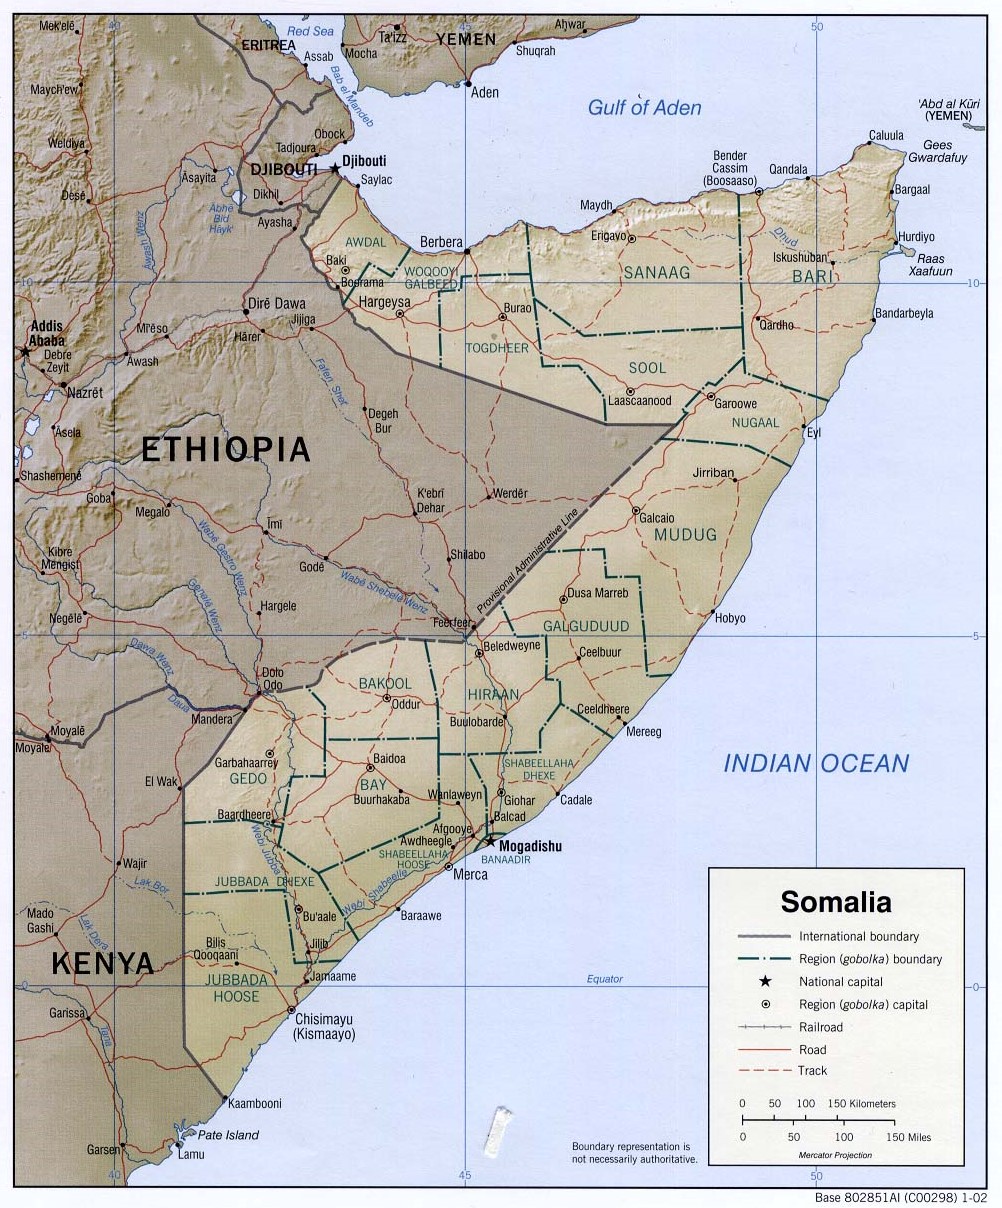 Mapa físico y político de Somalia (2002)